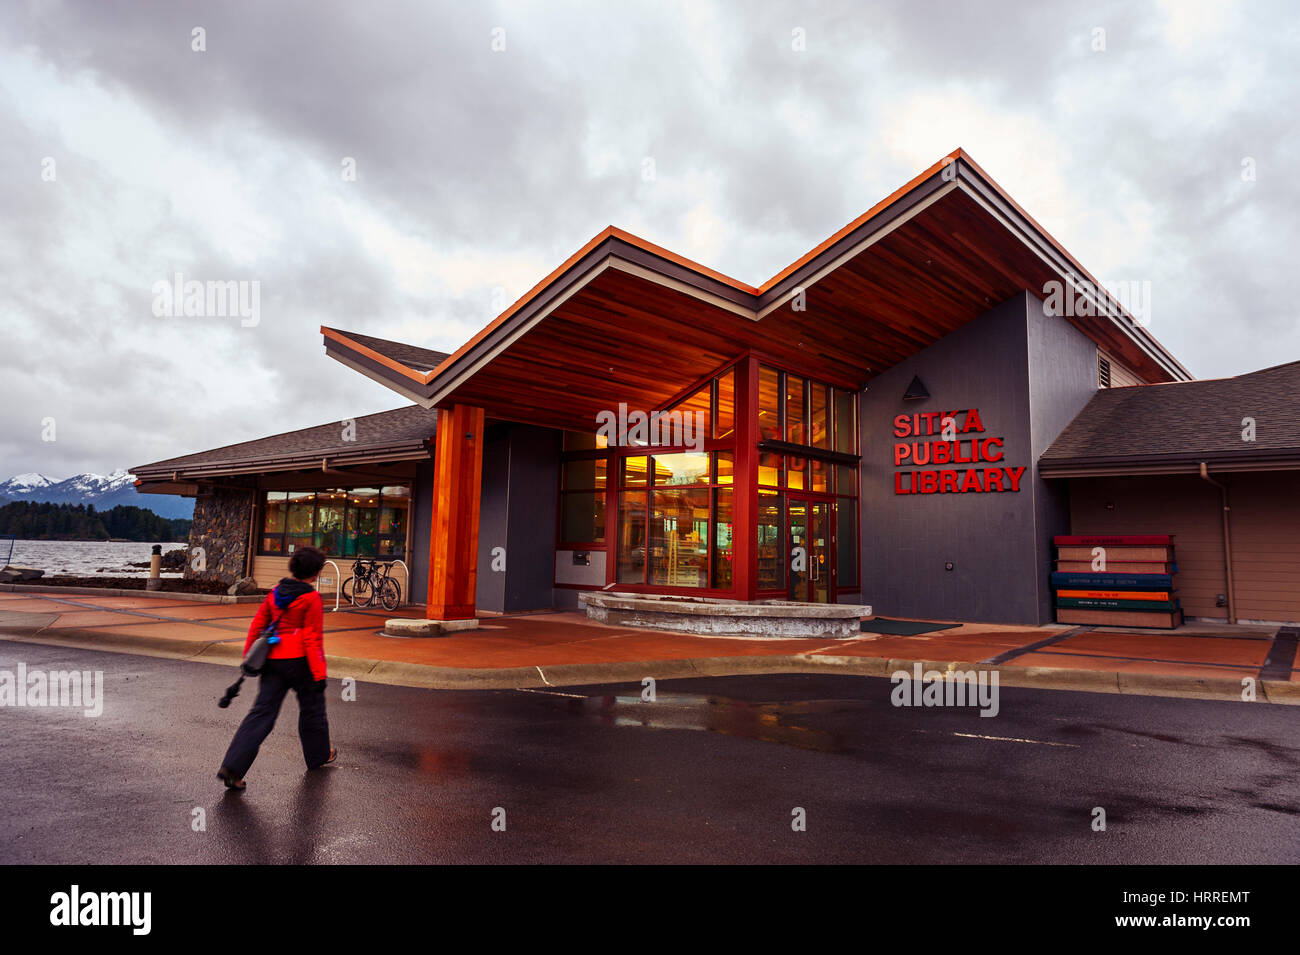 Donna in rosso Giacca pioggia a piedi da Sitka Biblioteca Pubblica nel centro cittadino di Sitka, Alaska, Stati Uniti d'America. Fotografia di Jeffrey Wickett, NorthLight fotografia. Foto Stock